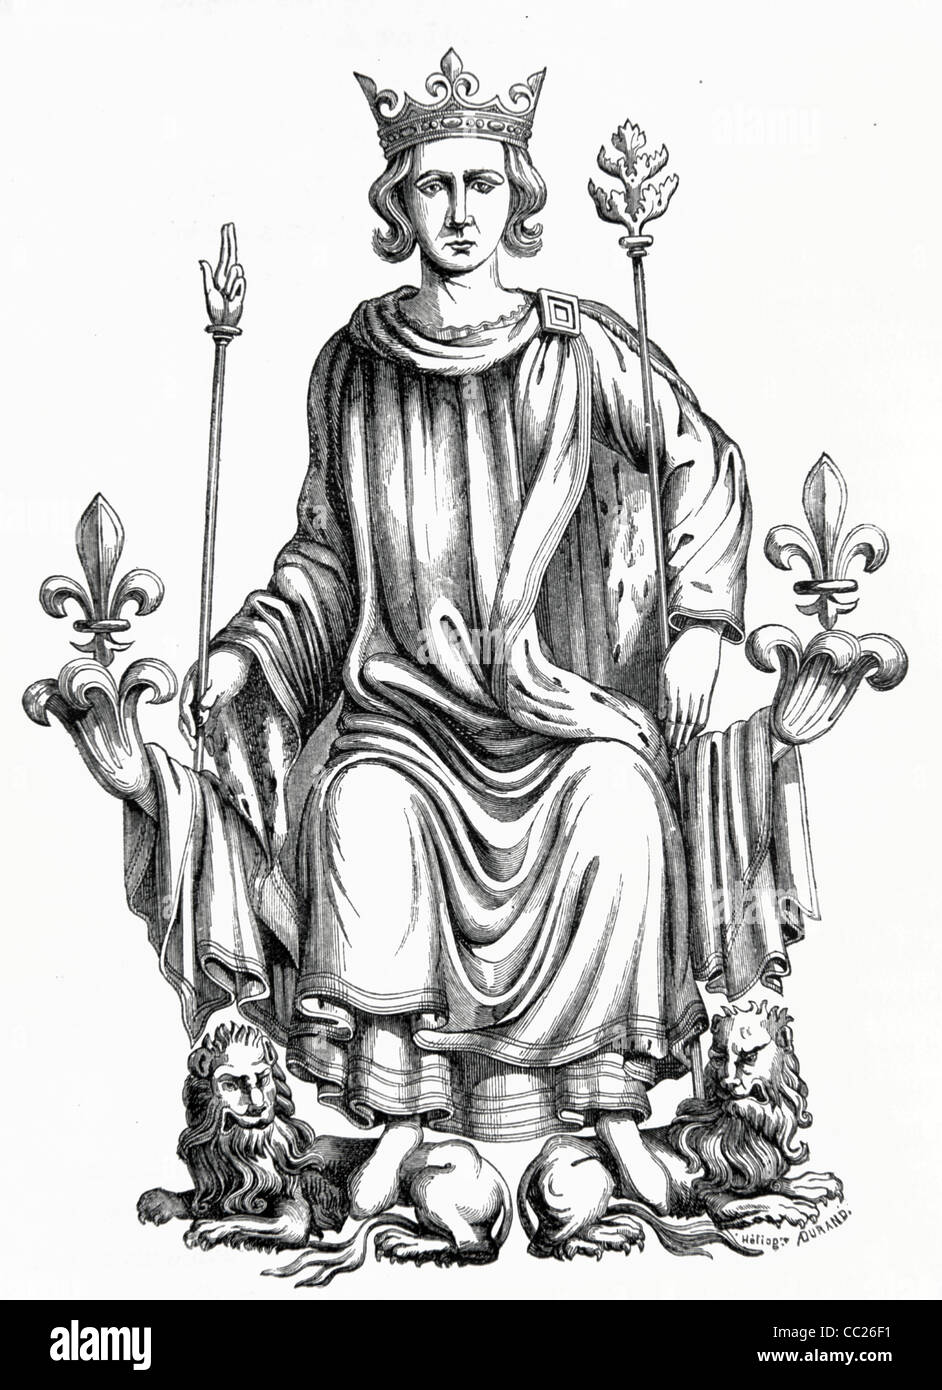 Charles VI de France (1368-1422) assis sur le trône français, roi de France (1380-1422). Illustration ancienne ou gravure Banque D'Images